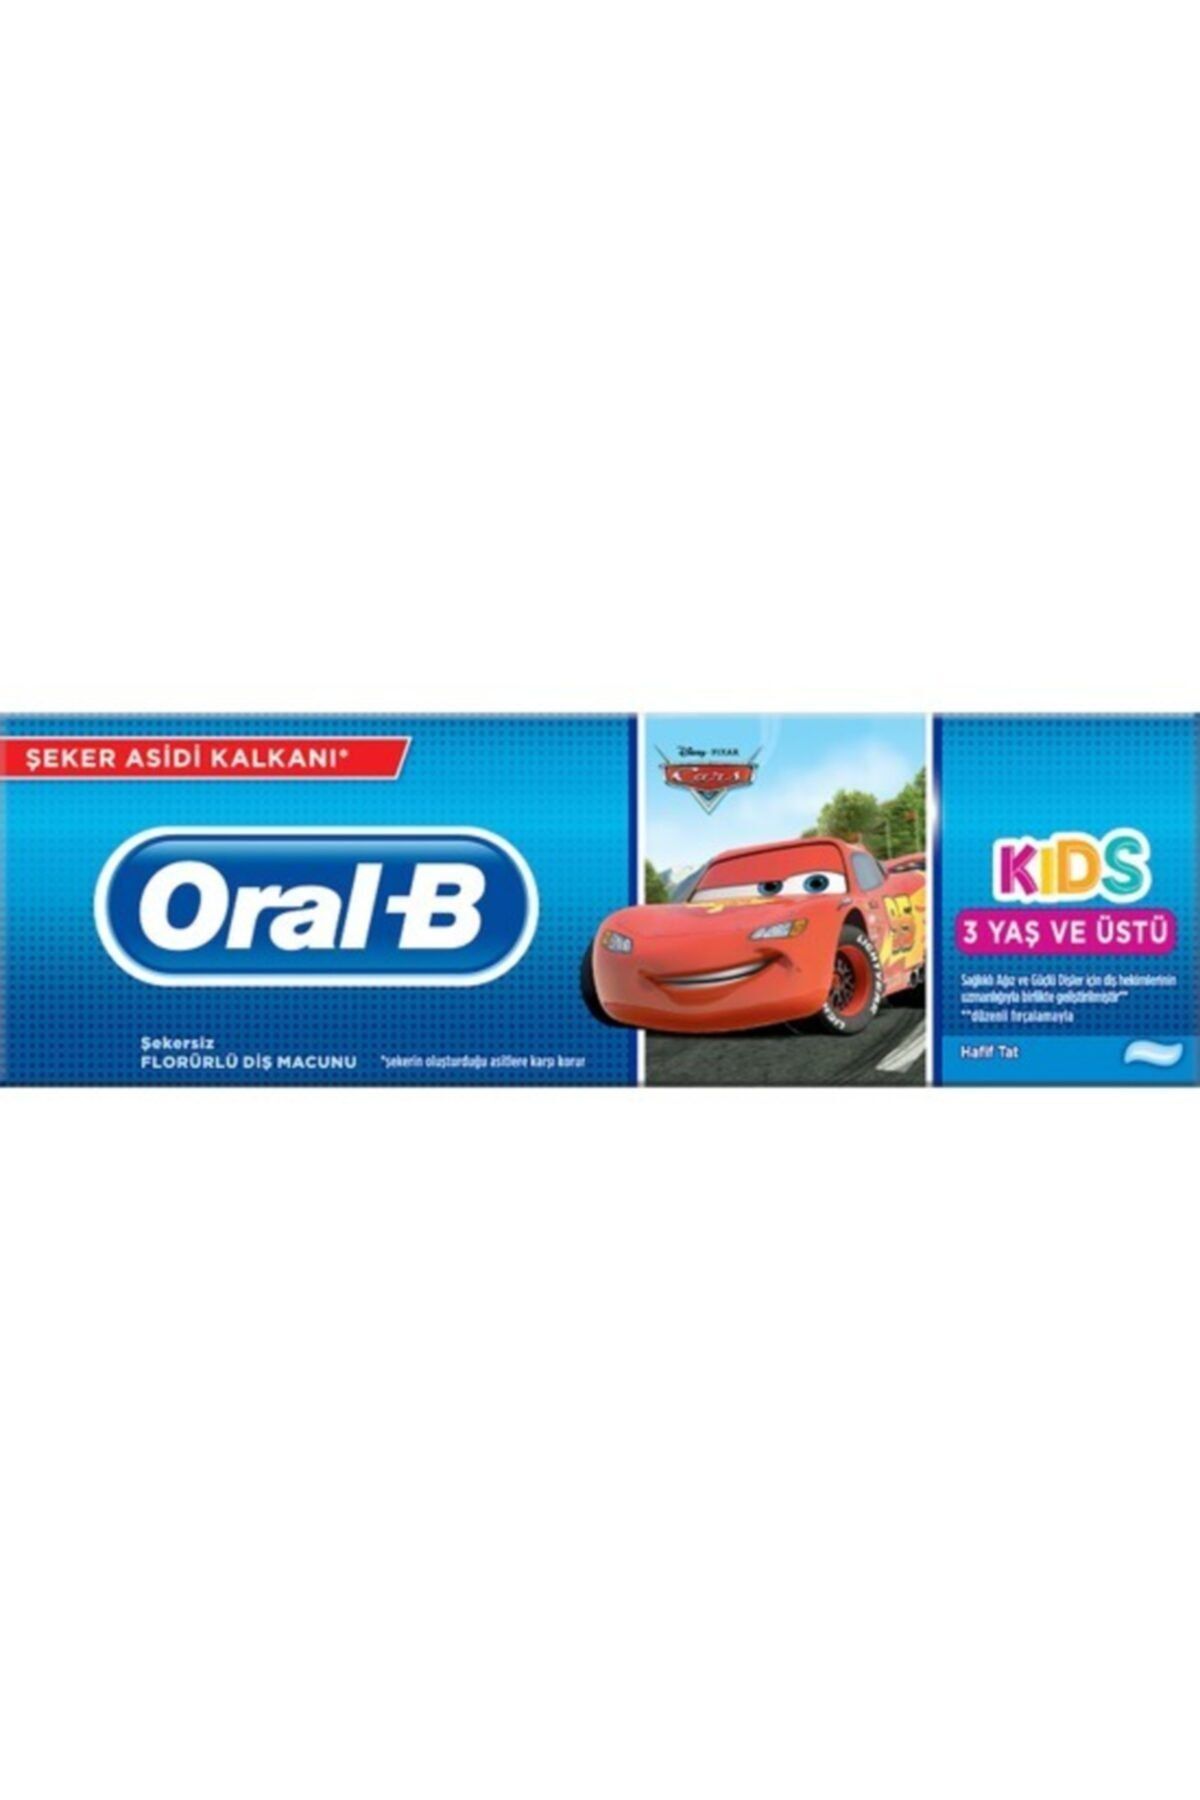 Oral-B Oral B Cars 3 Yaş Ve Üstü Diş Macunu 75 Ml